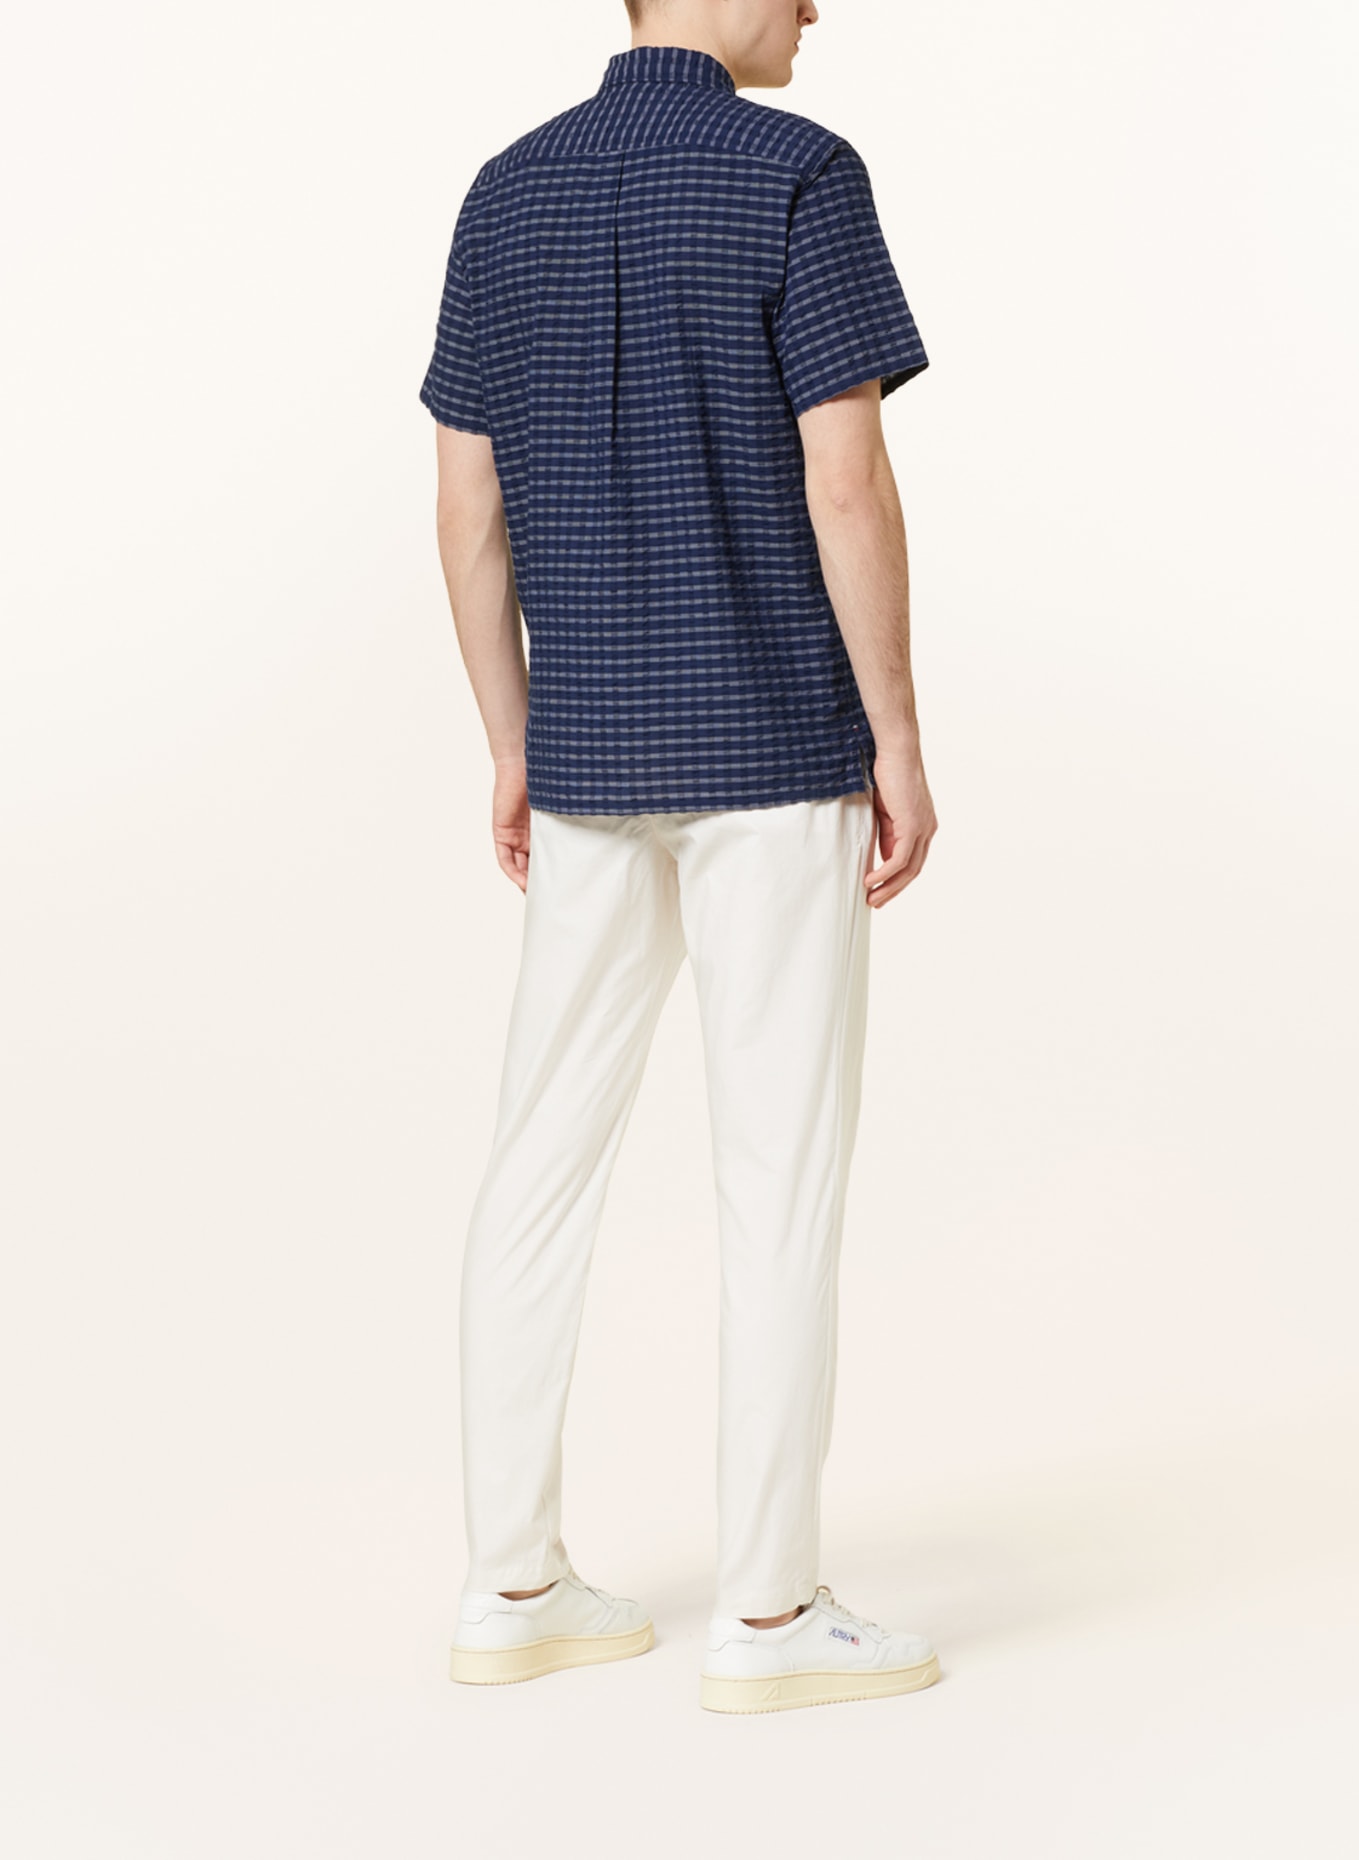 TOMMY HILFIGER Short sleeve shirt regular fit, Color: DARK BLUE/ WHITE (Image 3)